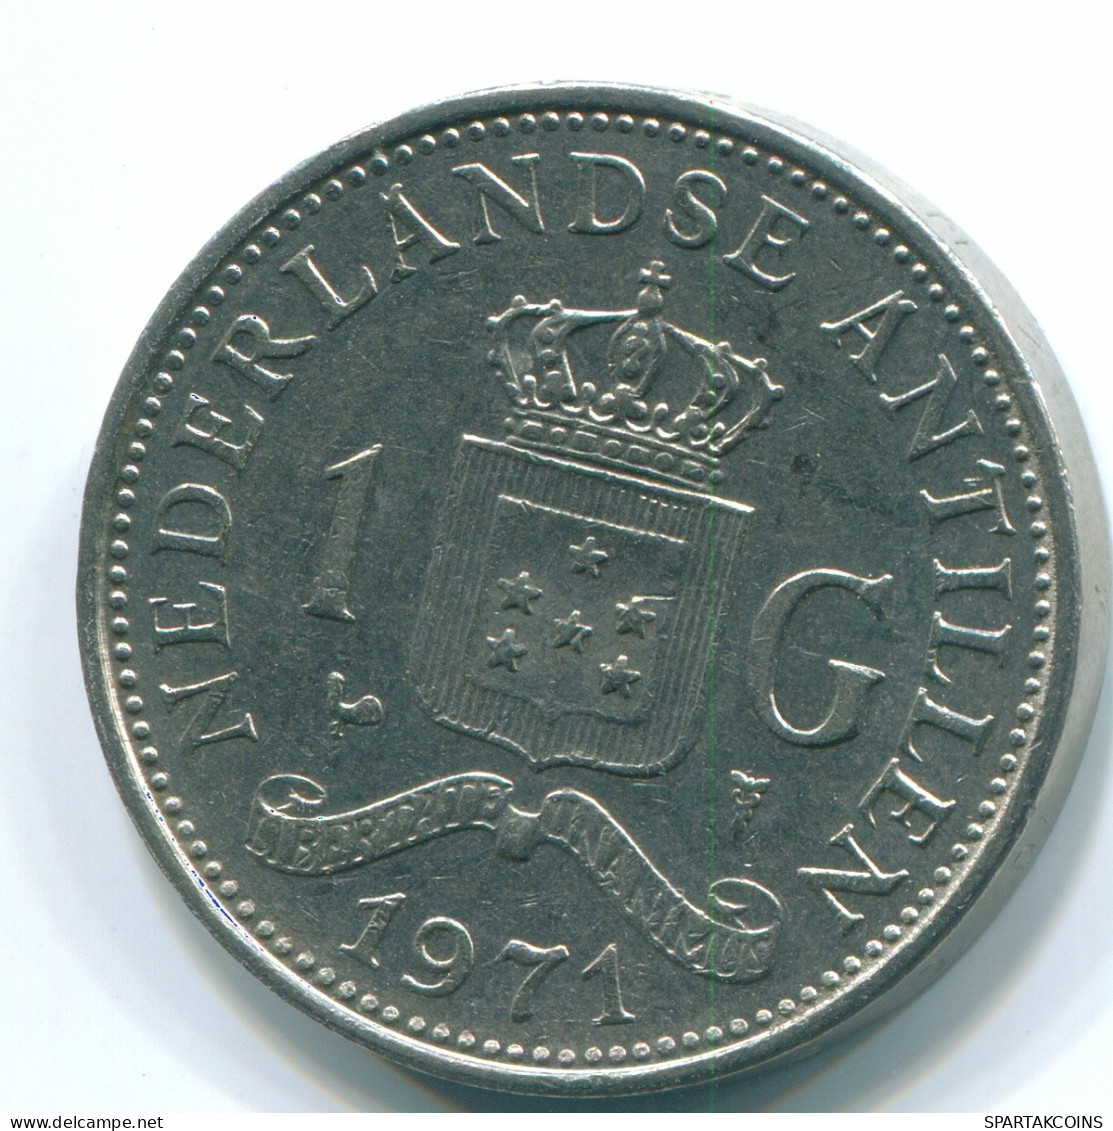 1 GULDEN 1971 NIEDERLÄNDISCHE ANTILLEN Nickel Koloniale Münze #S12025.D.A - Nederlandse Antillen